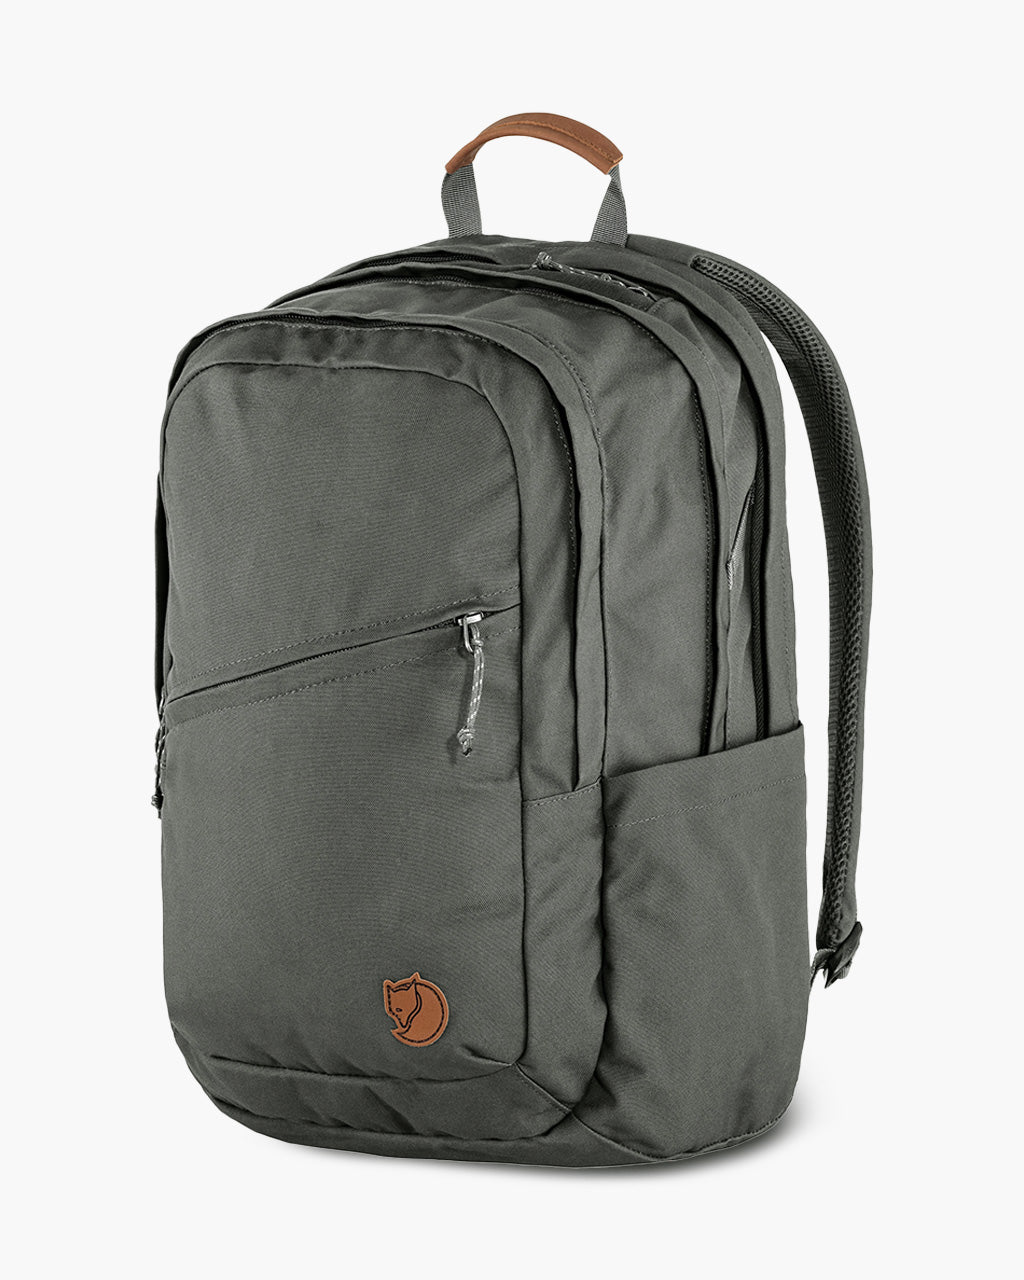 expeditie Ontkennen Respect Fjallraven Raven Backpack 28: Durable, Eco-friendly, 28L Volume – BrandsWalk